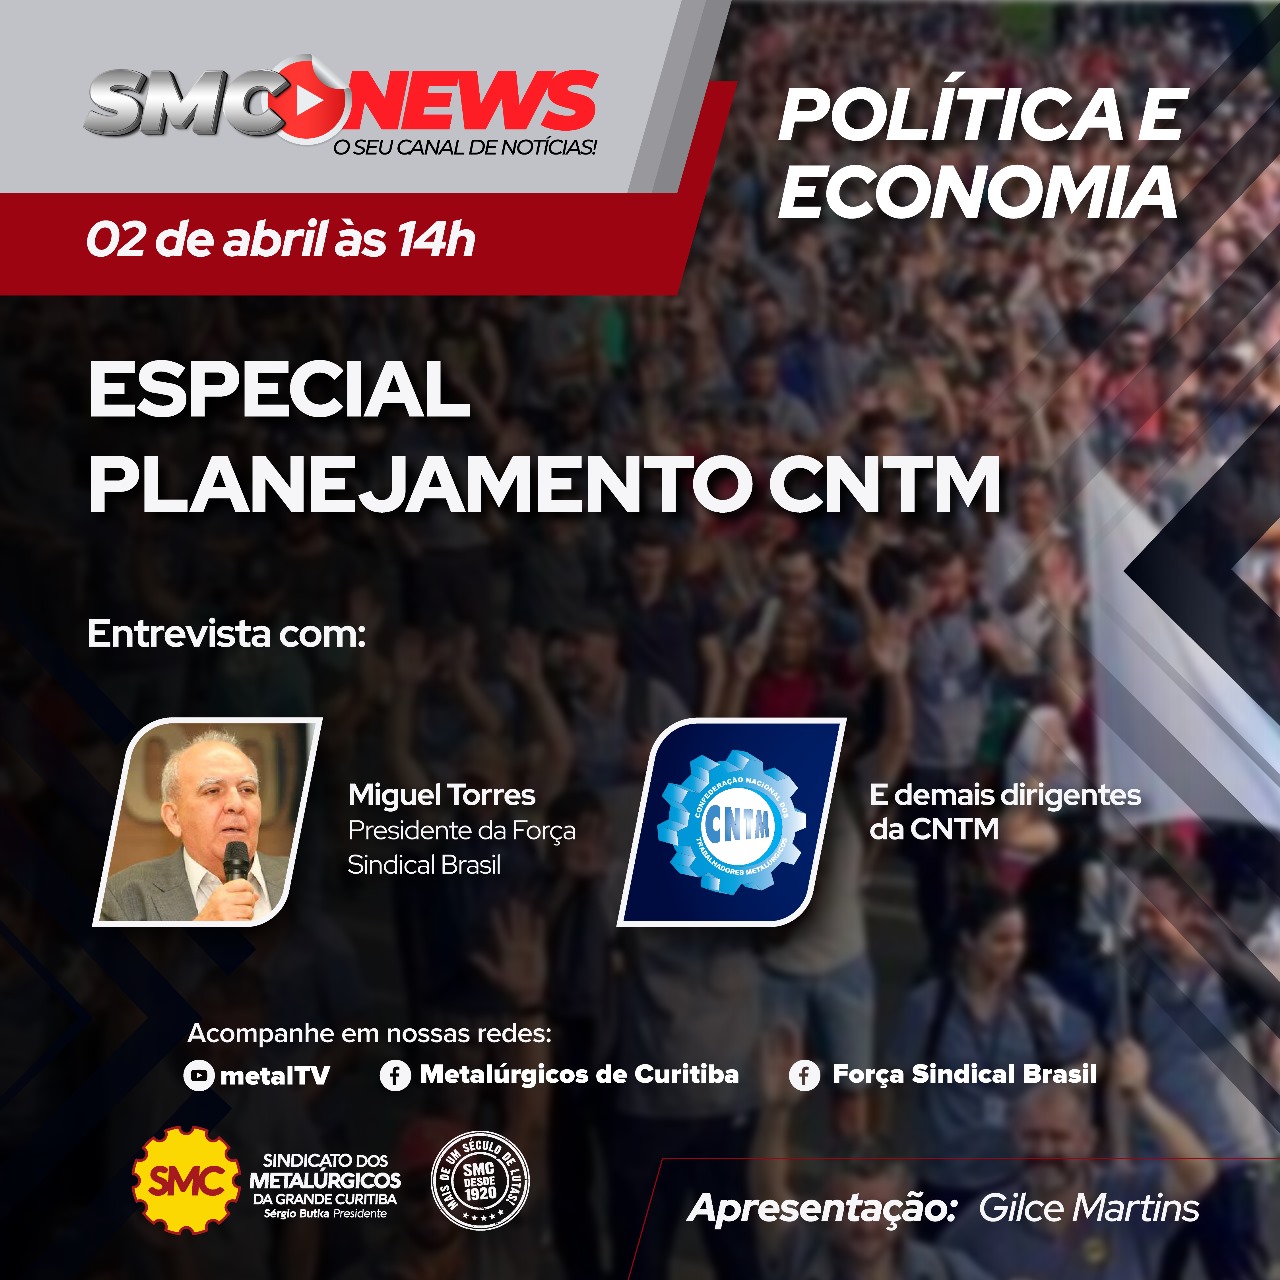 SMC NEWS Especial - Planejamento CNTM